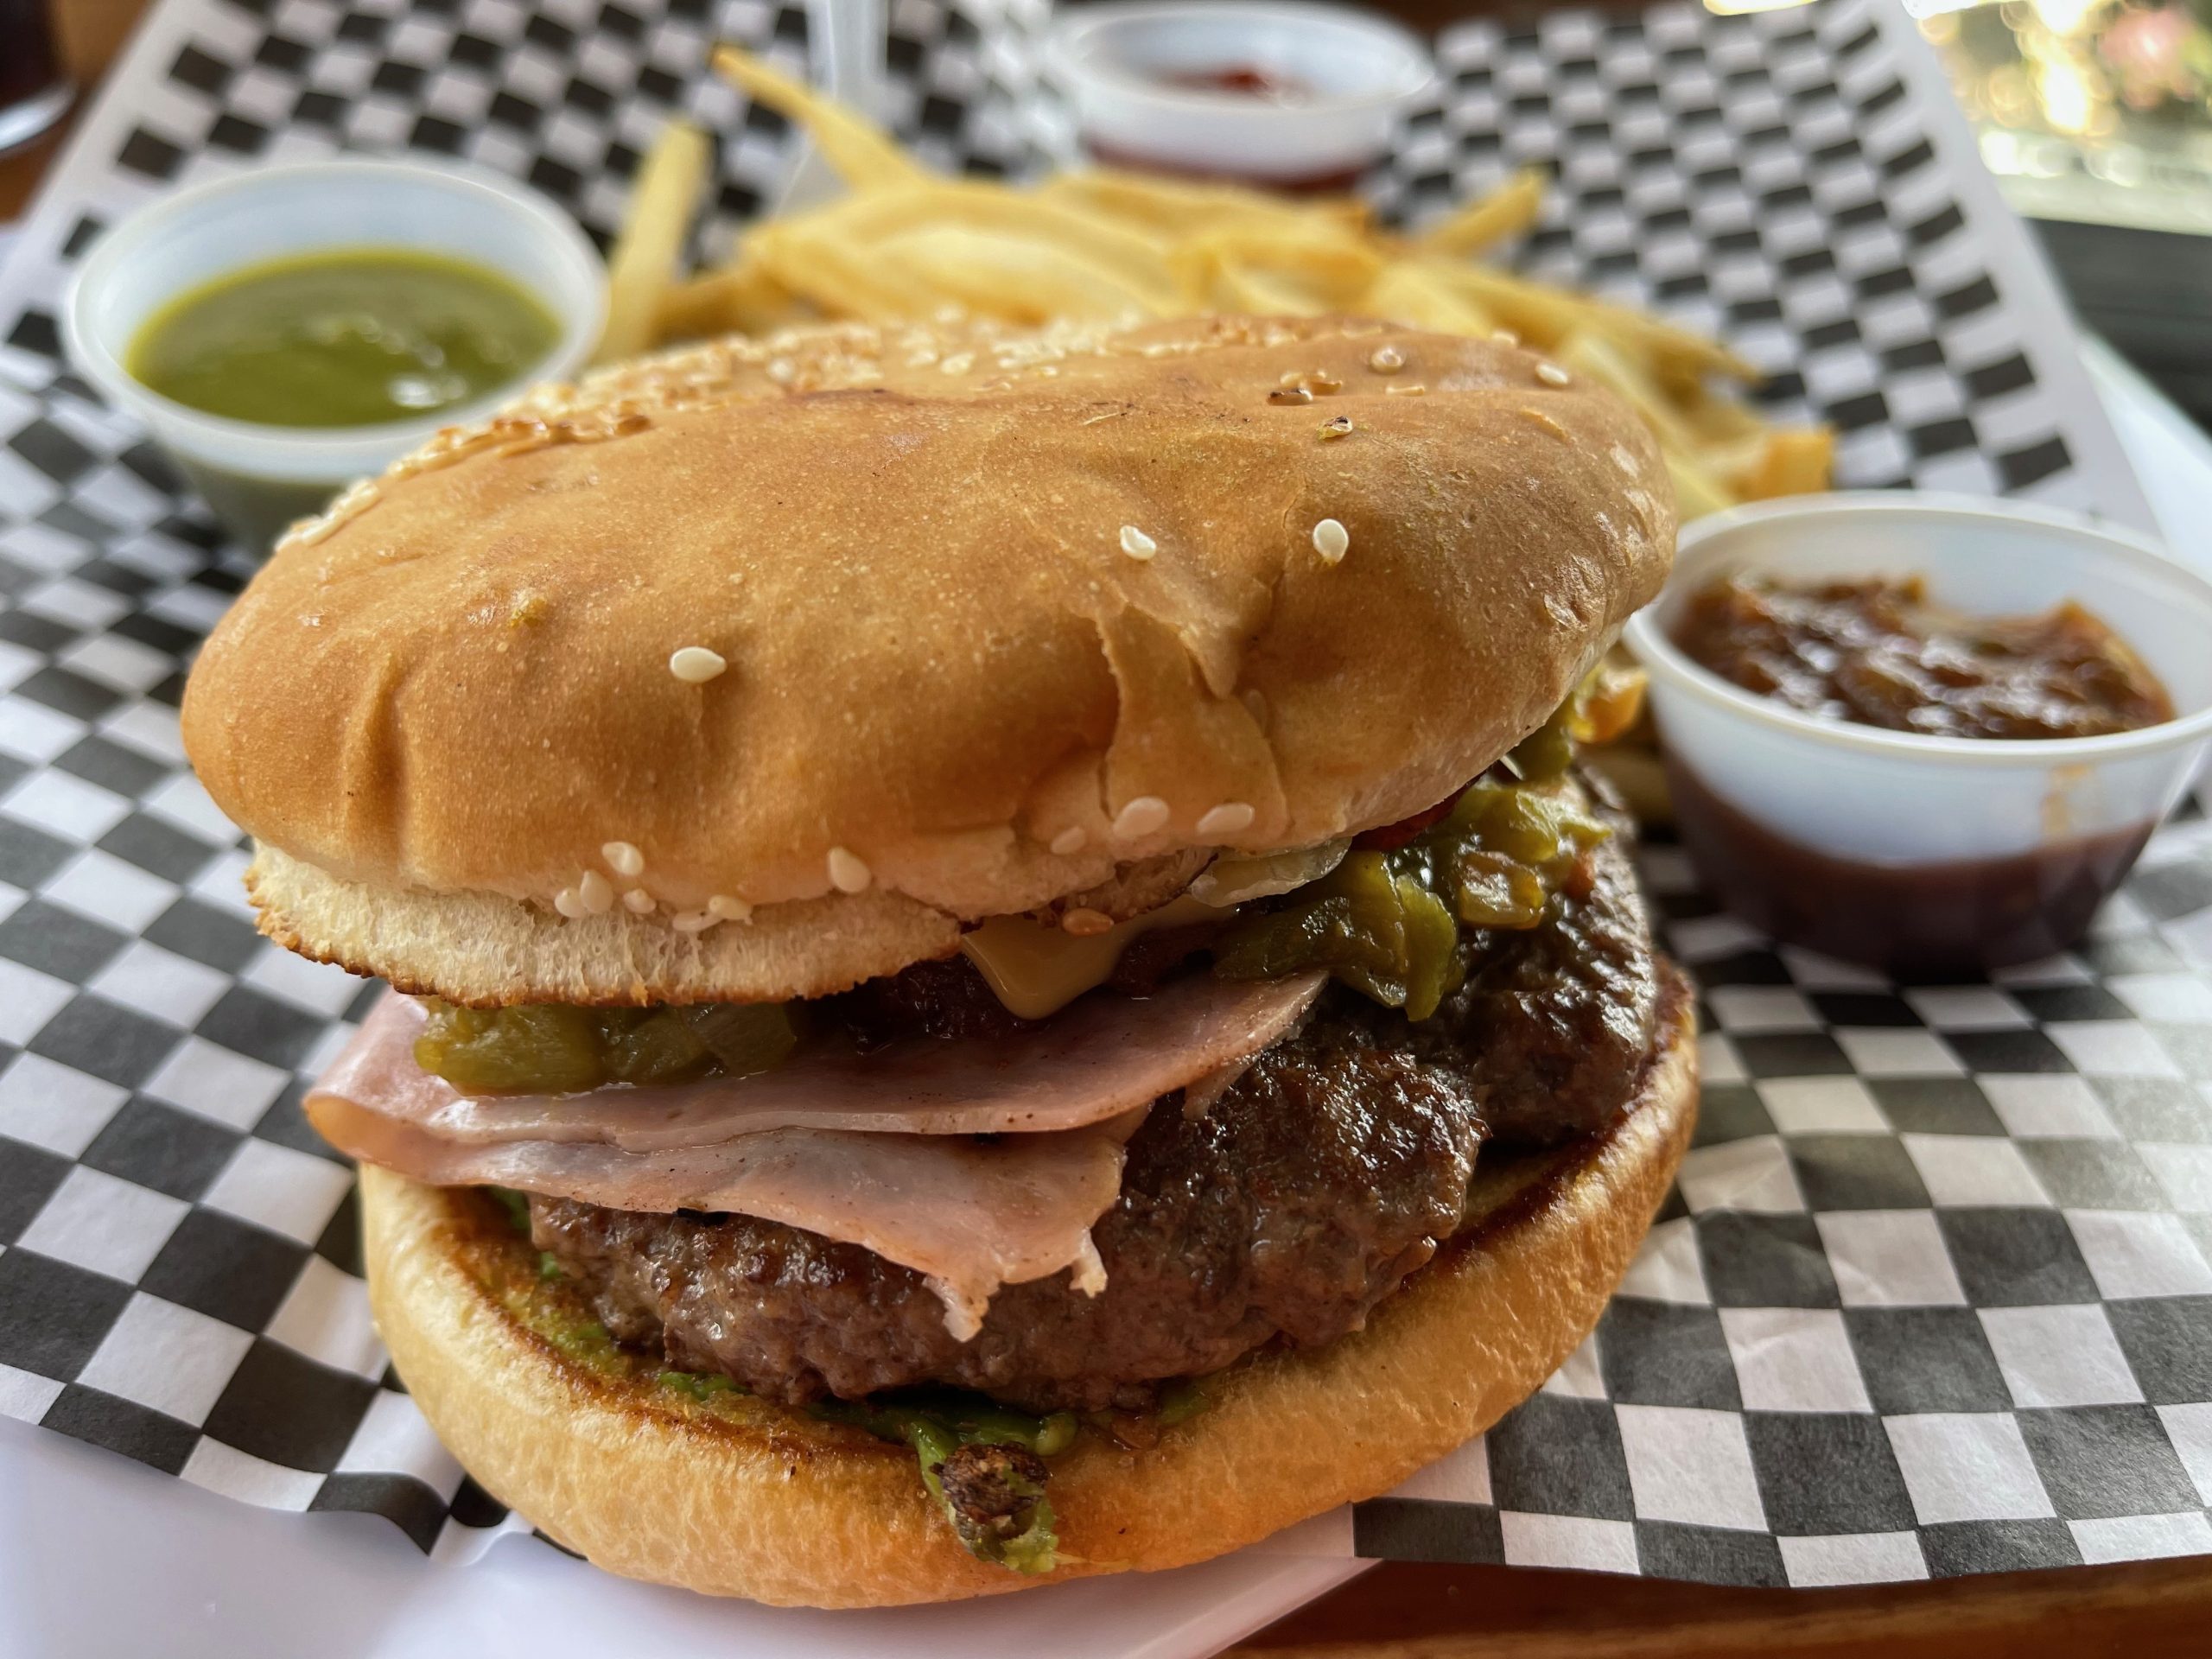 Burger Bro’s – Albuquerque, New Mexico